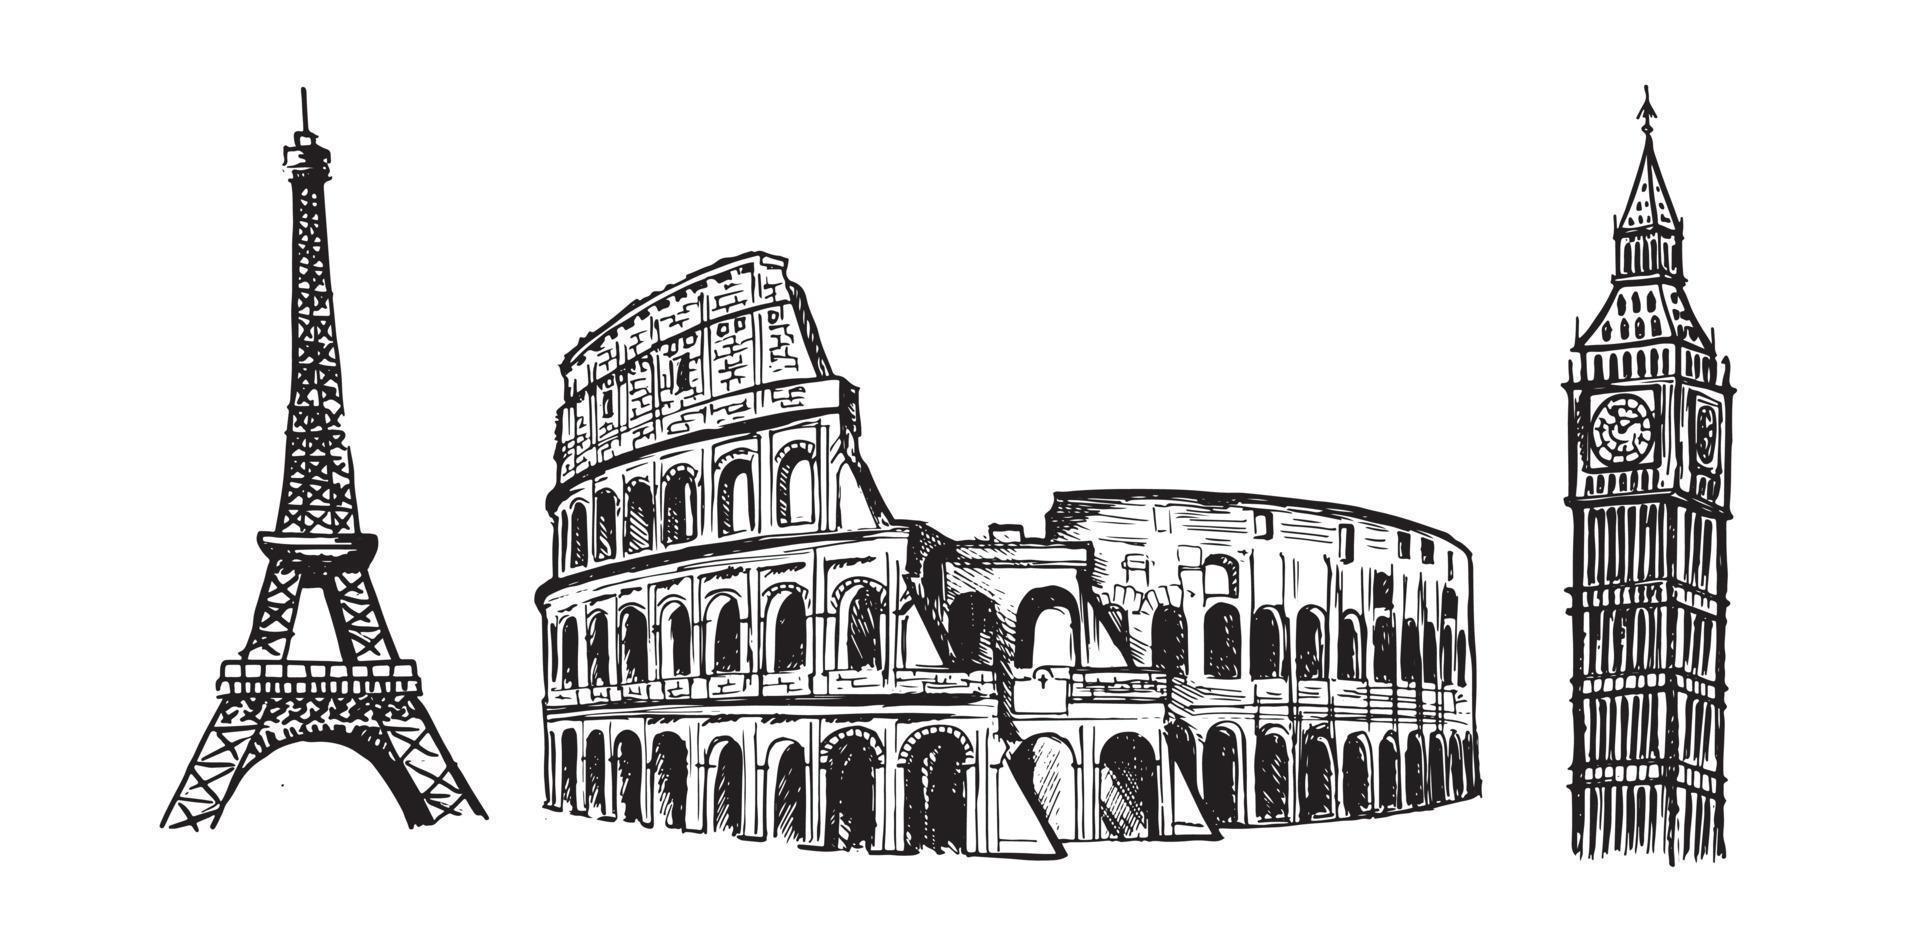 skizze des kolosseums, eiffelturm in paris, big ben. handgezeichnete Illustrationen. vektor